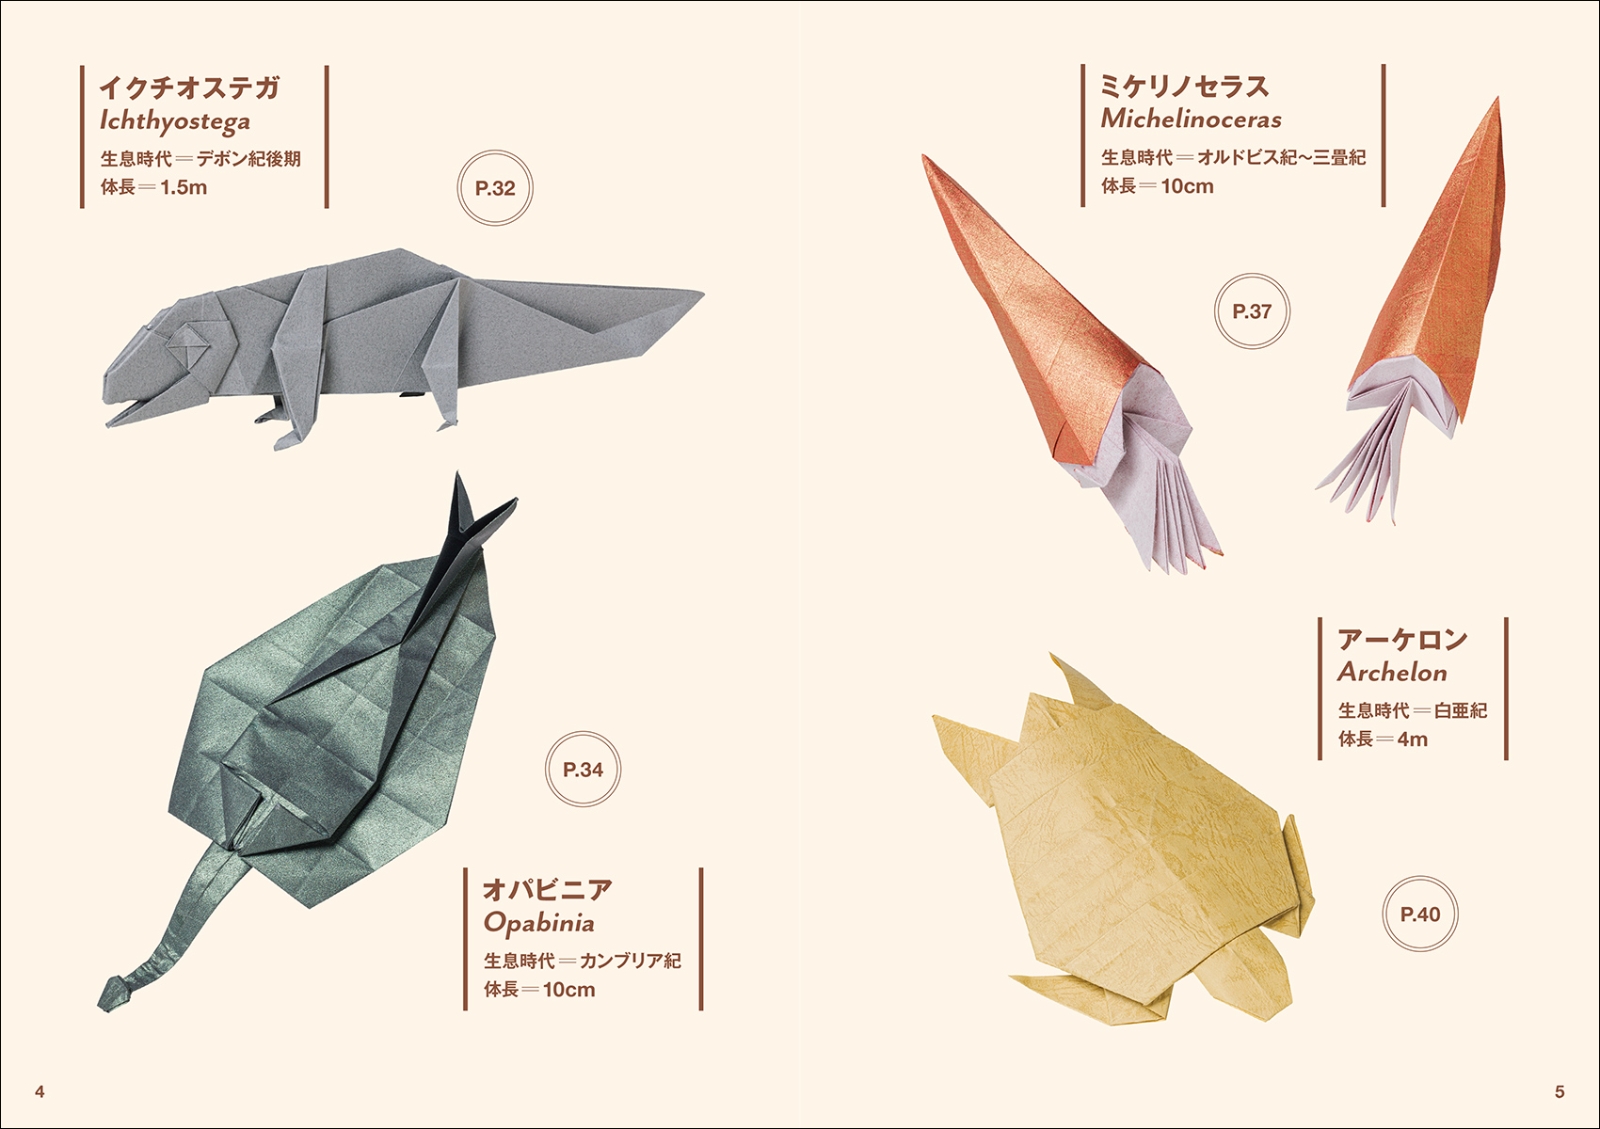 楽天ブックス 恐竜と古生物の折り紙 太古に暮らした生き物たちの造形美を紙で表現 川畑 文昭 本